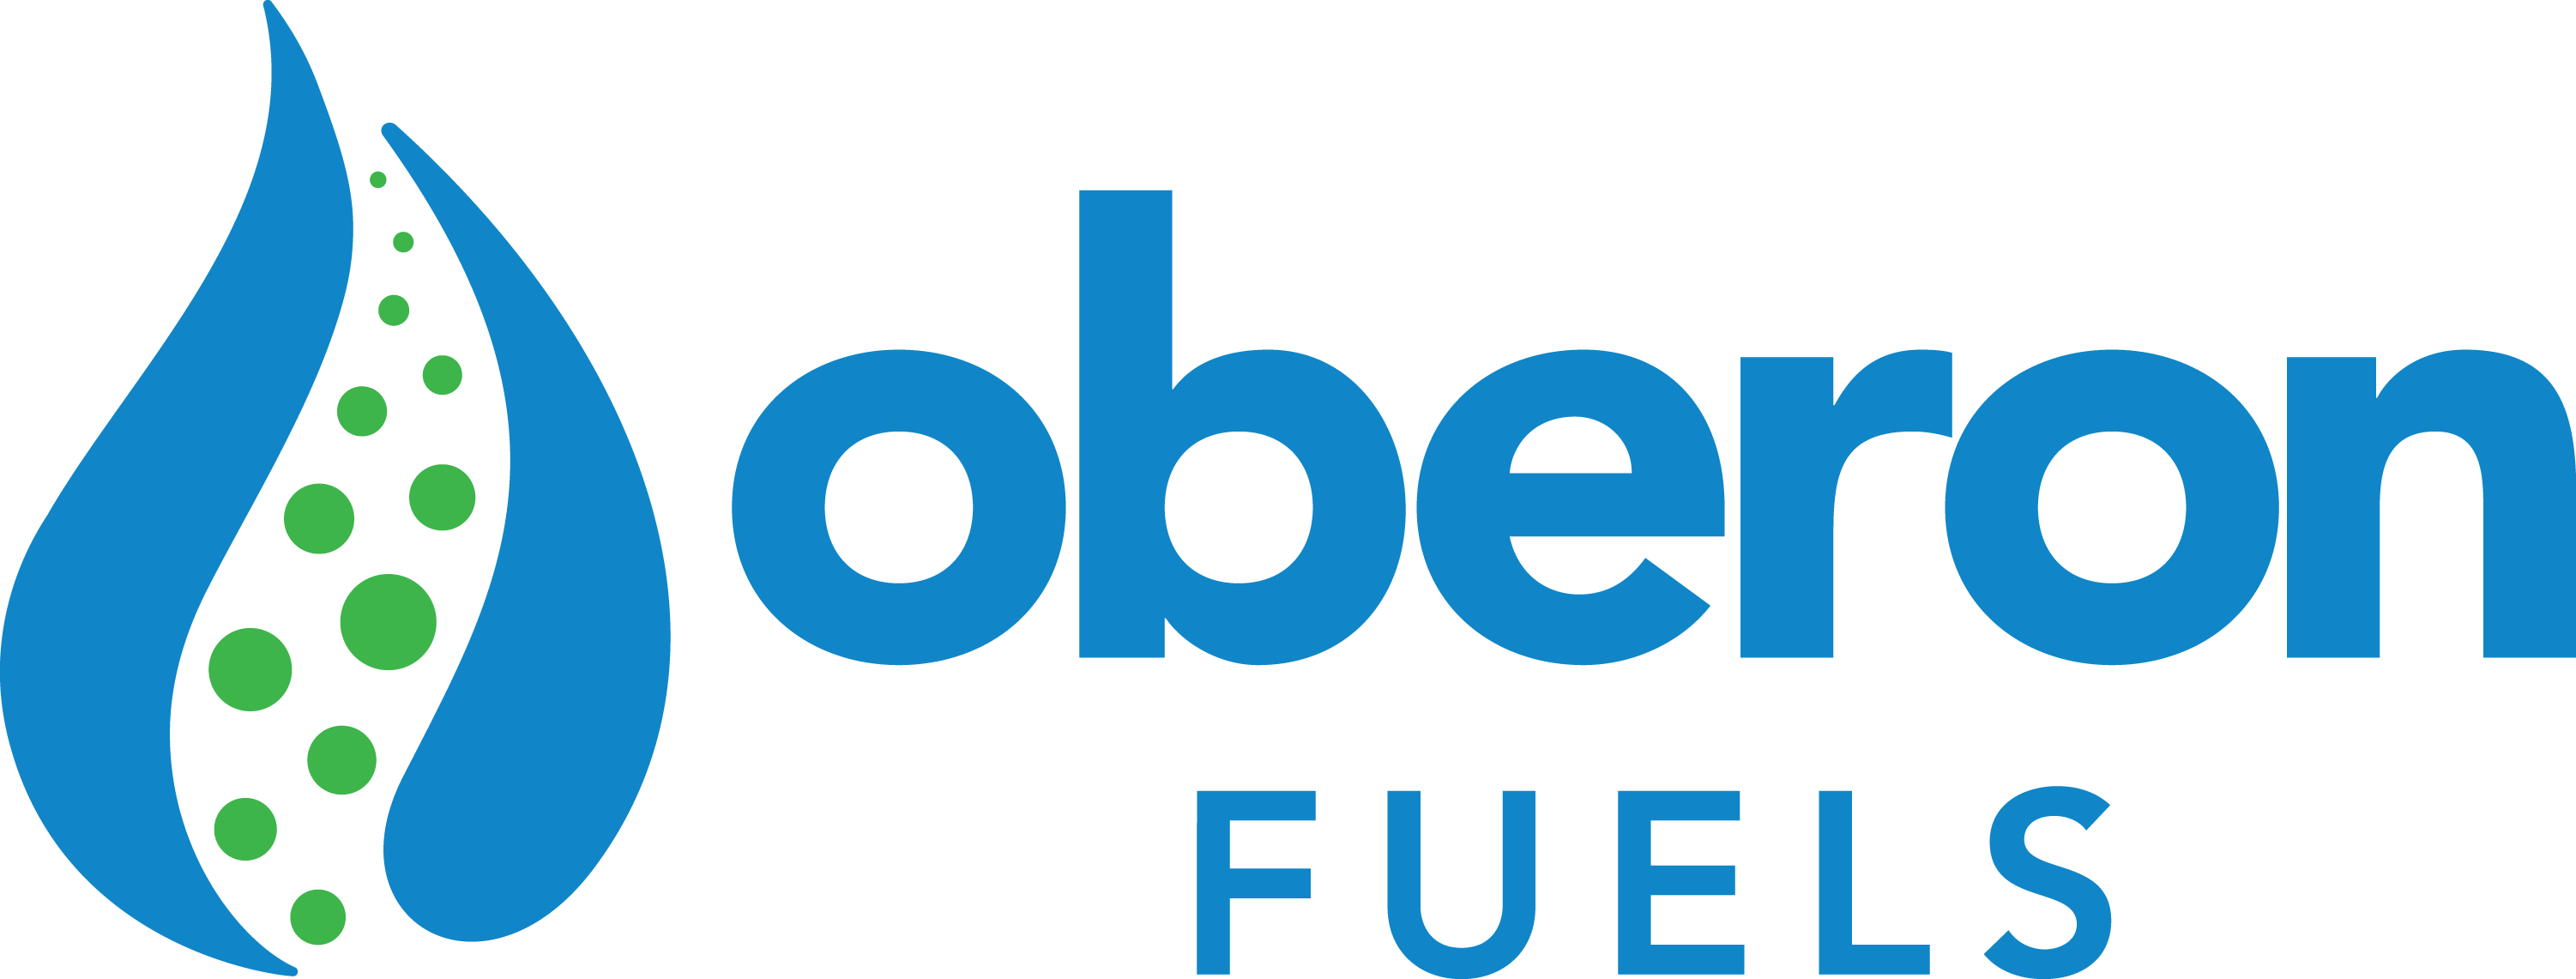 OberonFuels_Logo_2020.png